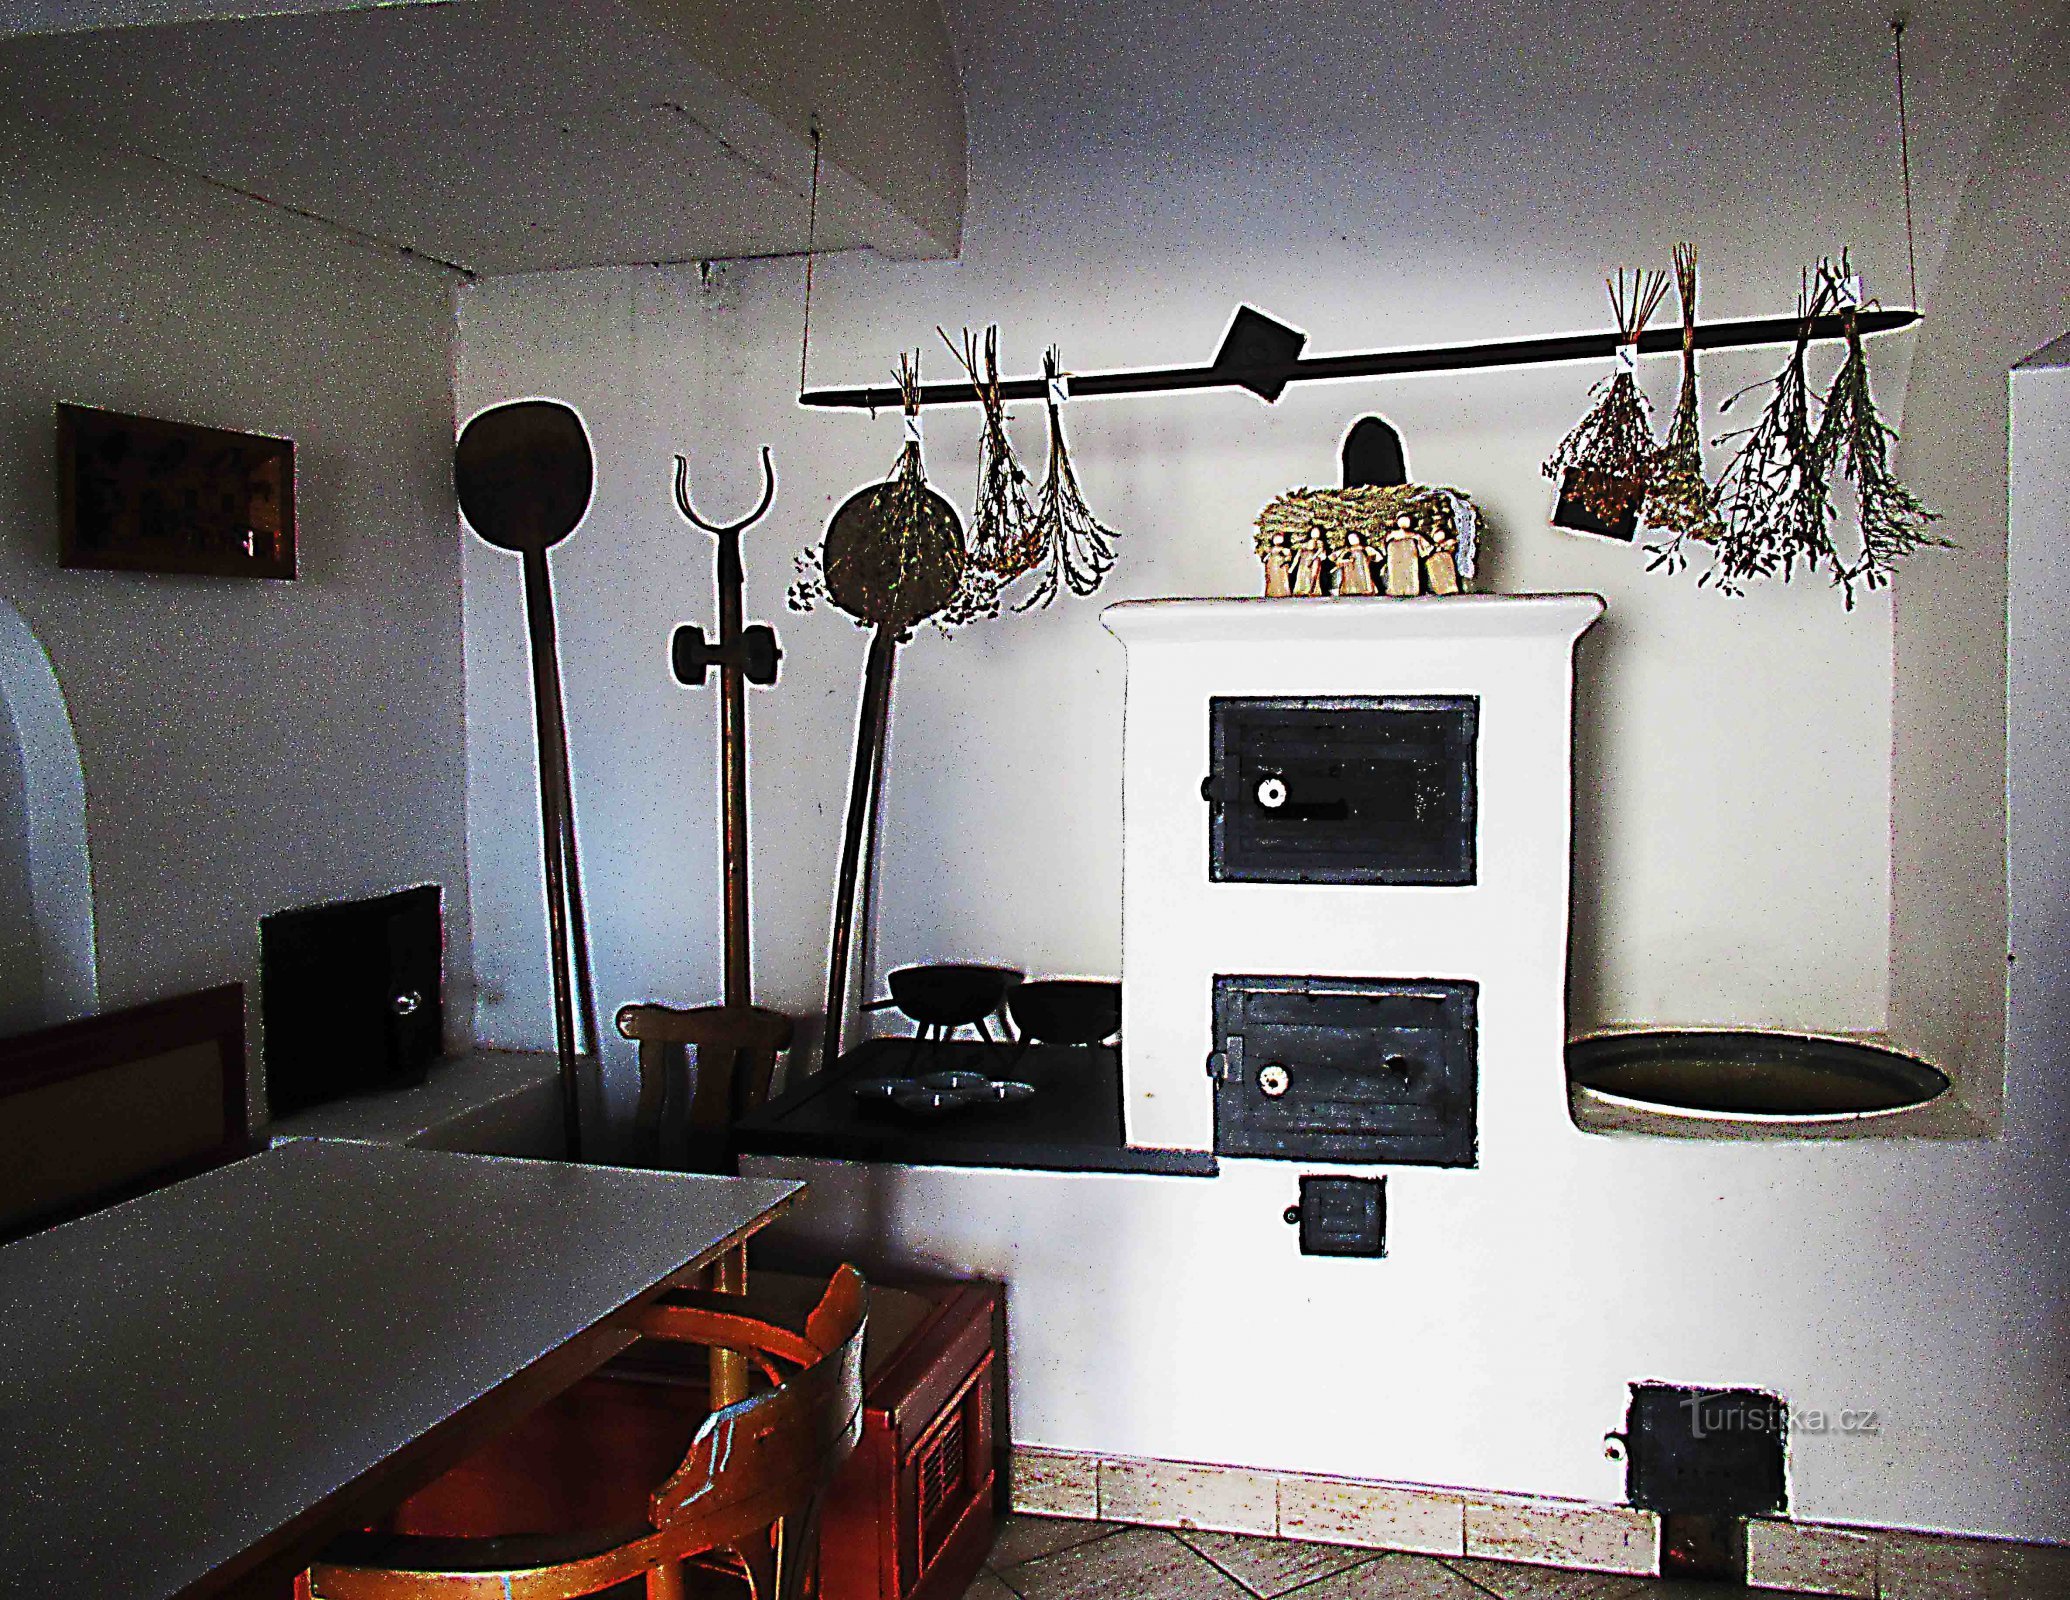 Un pequeño museo de herrería en la fragua de Zeman en Holešov